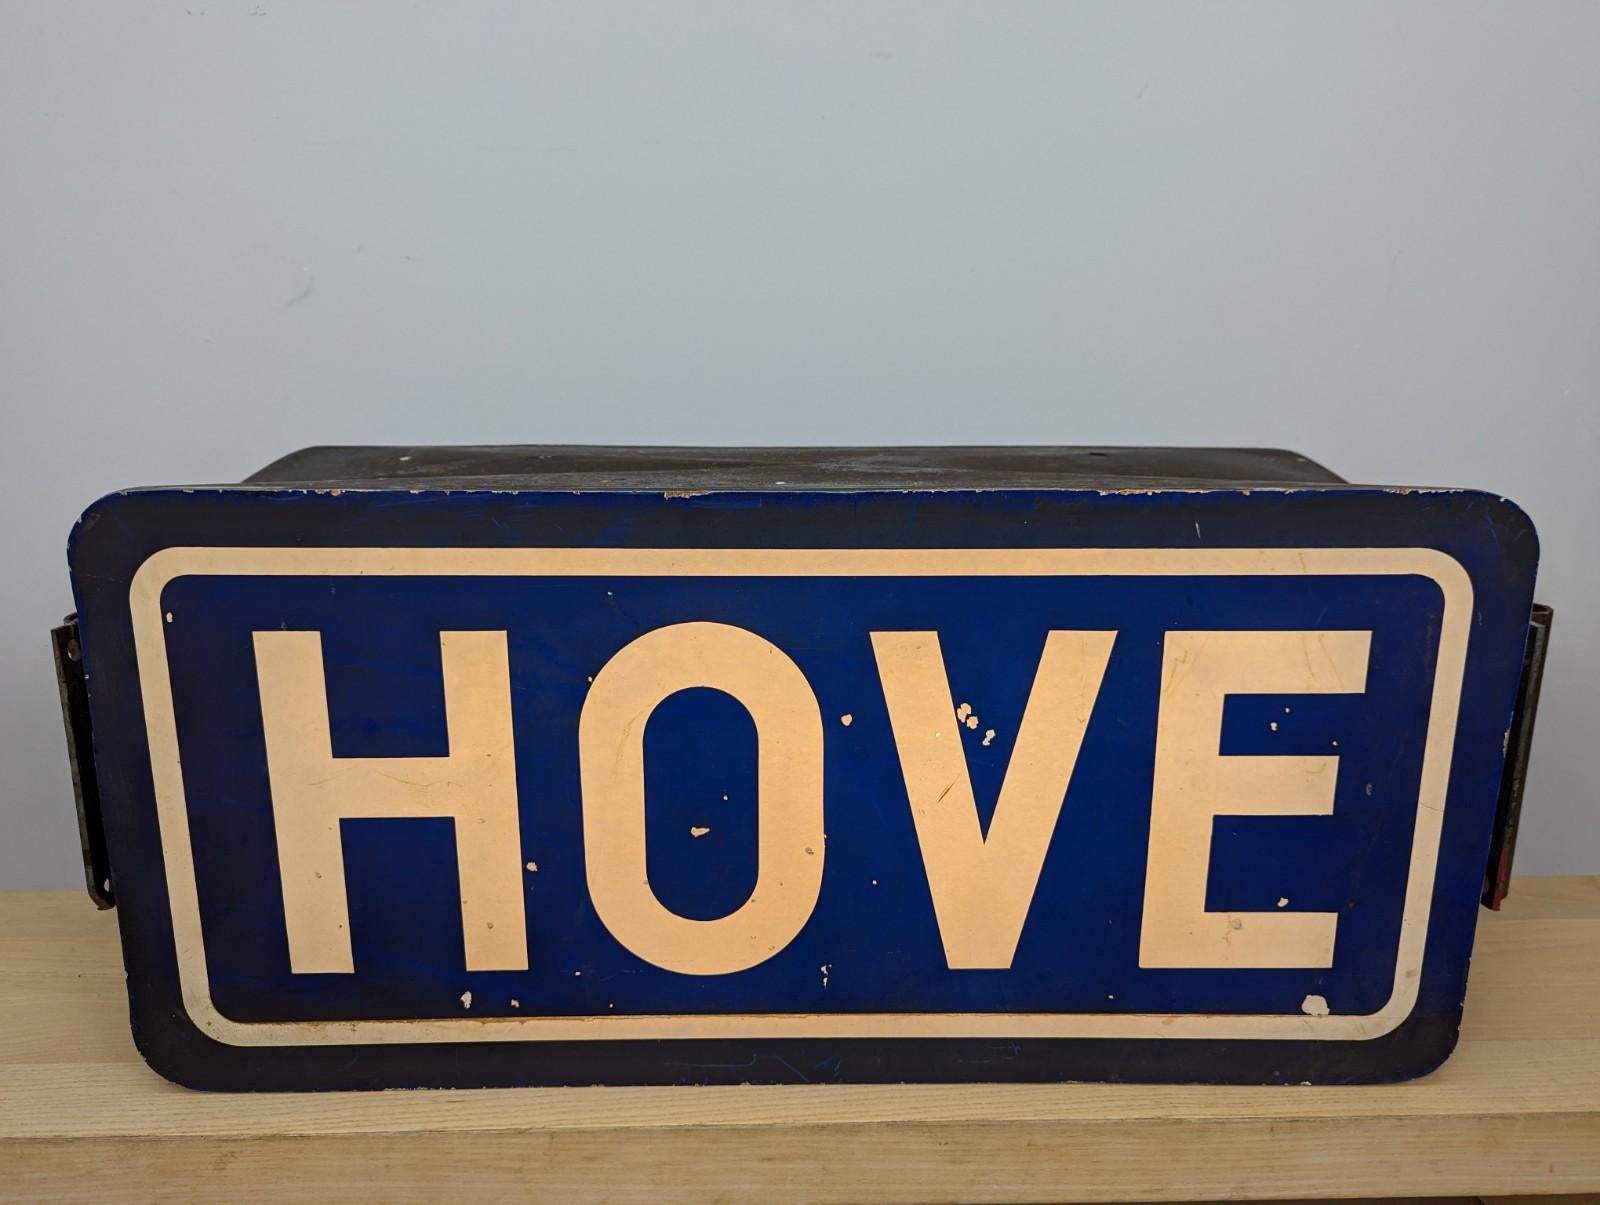 Grande boîte à lumière publicitaire 'Hove' datant du milieu du siècle dernier.

La boîte est fabriquée en fibre de verre et contient un éclairage LED moderne.

L'objet présente une belle patine